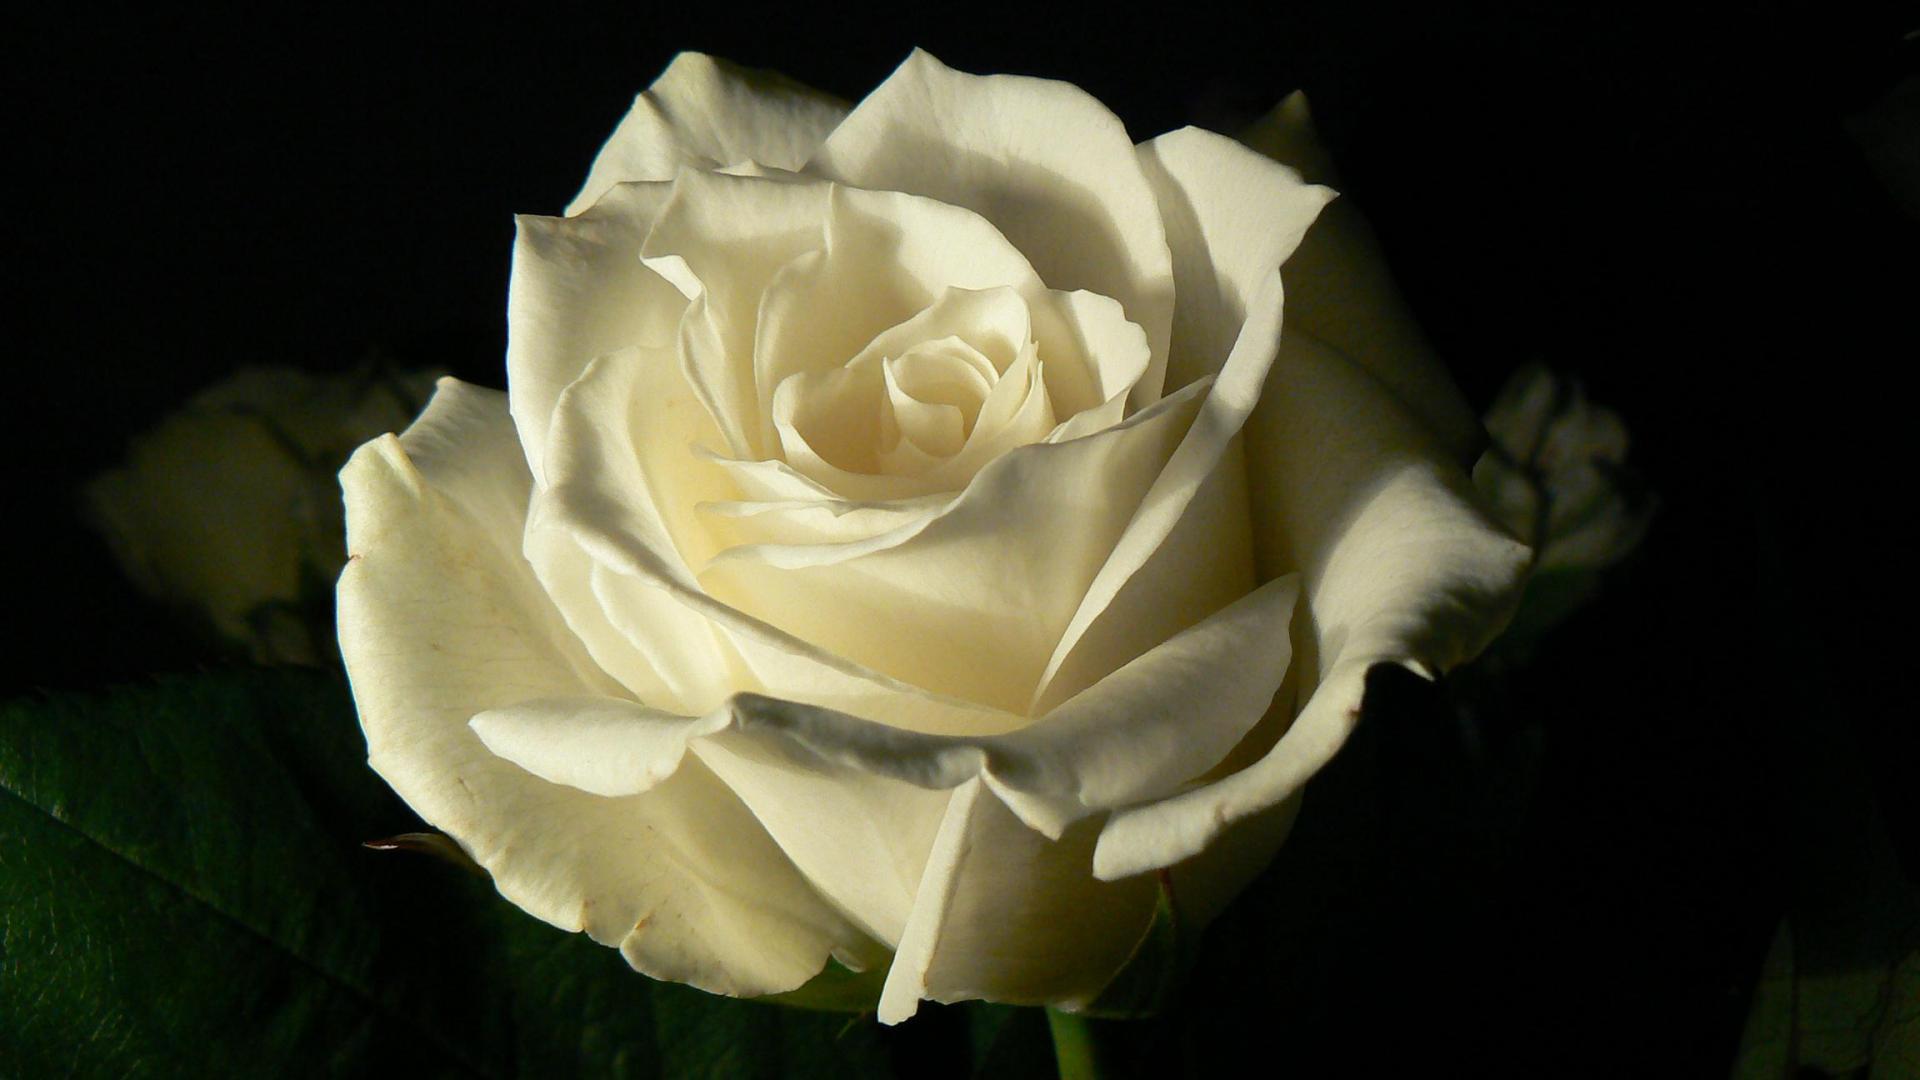 White Roses Black Background White rose on